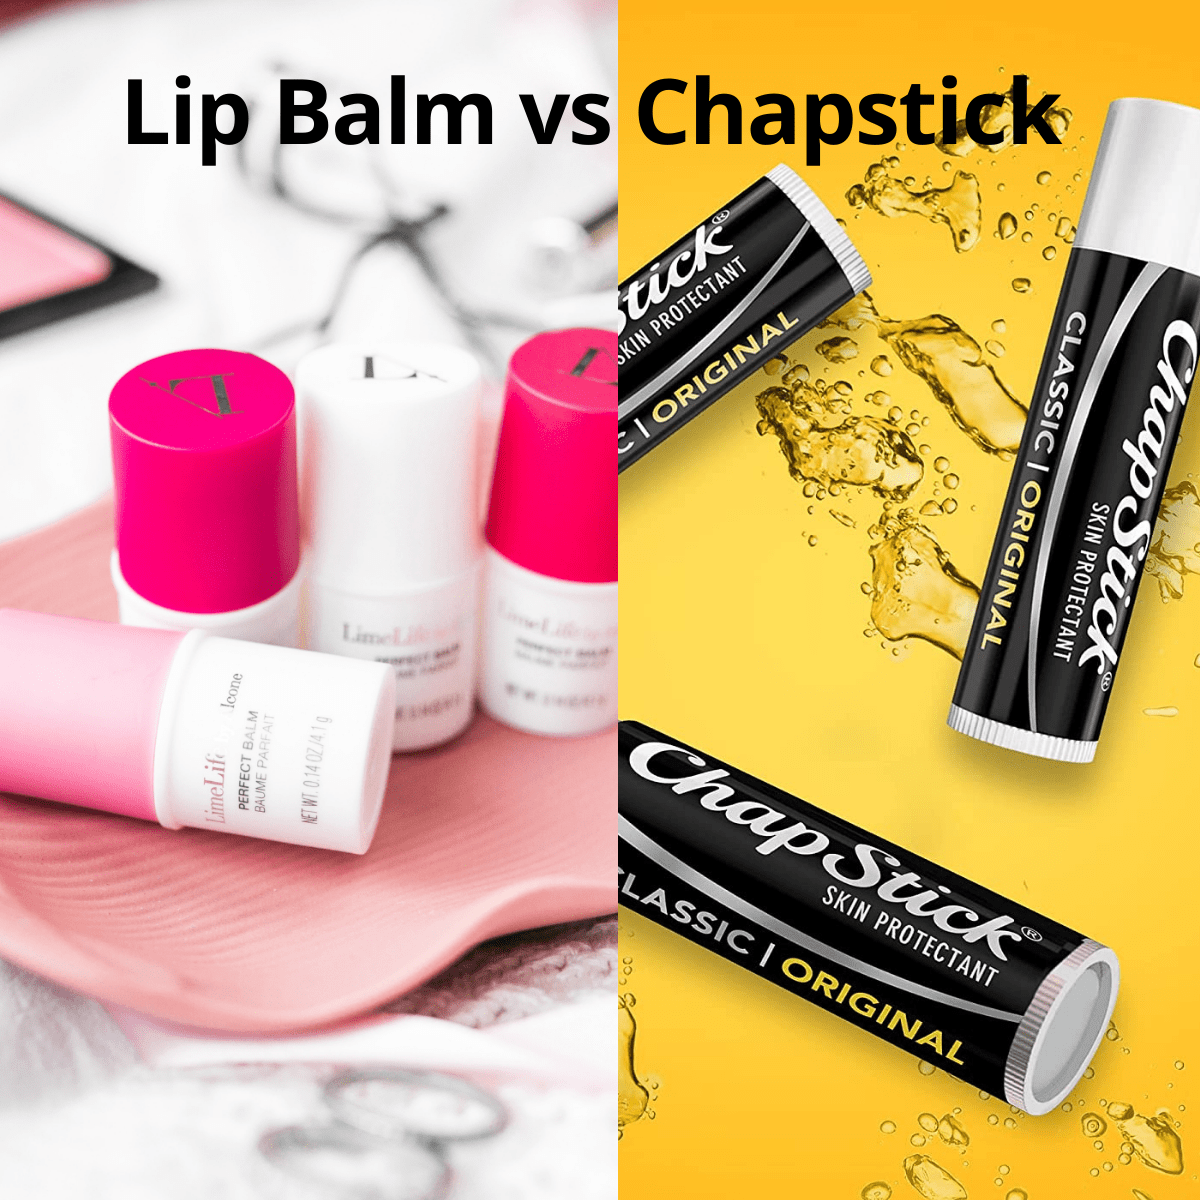 Lip Balm vs Chapstick